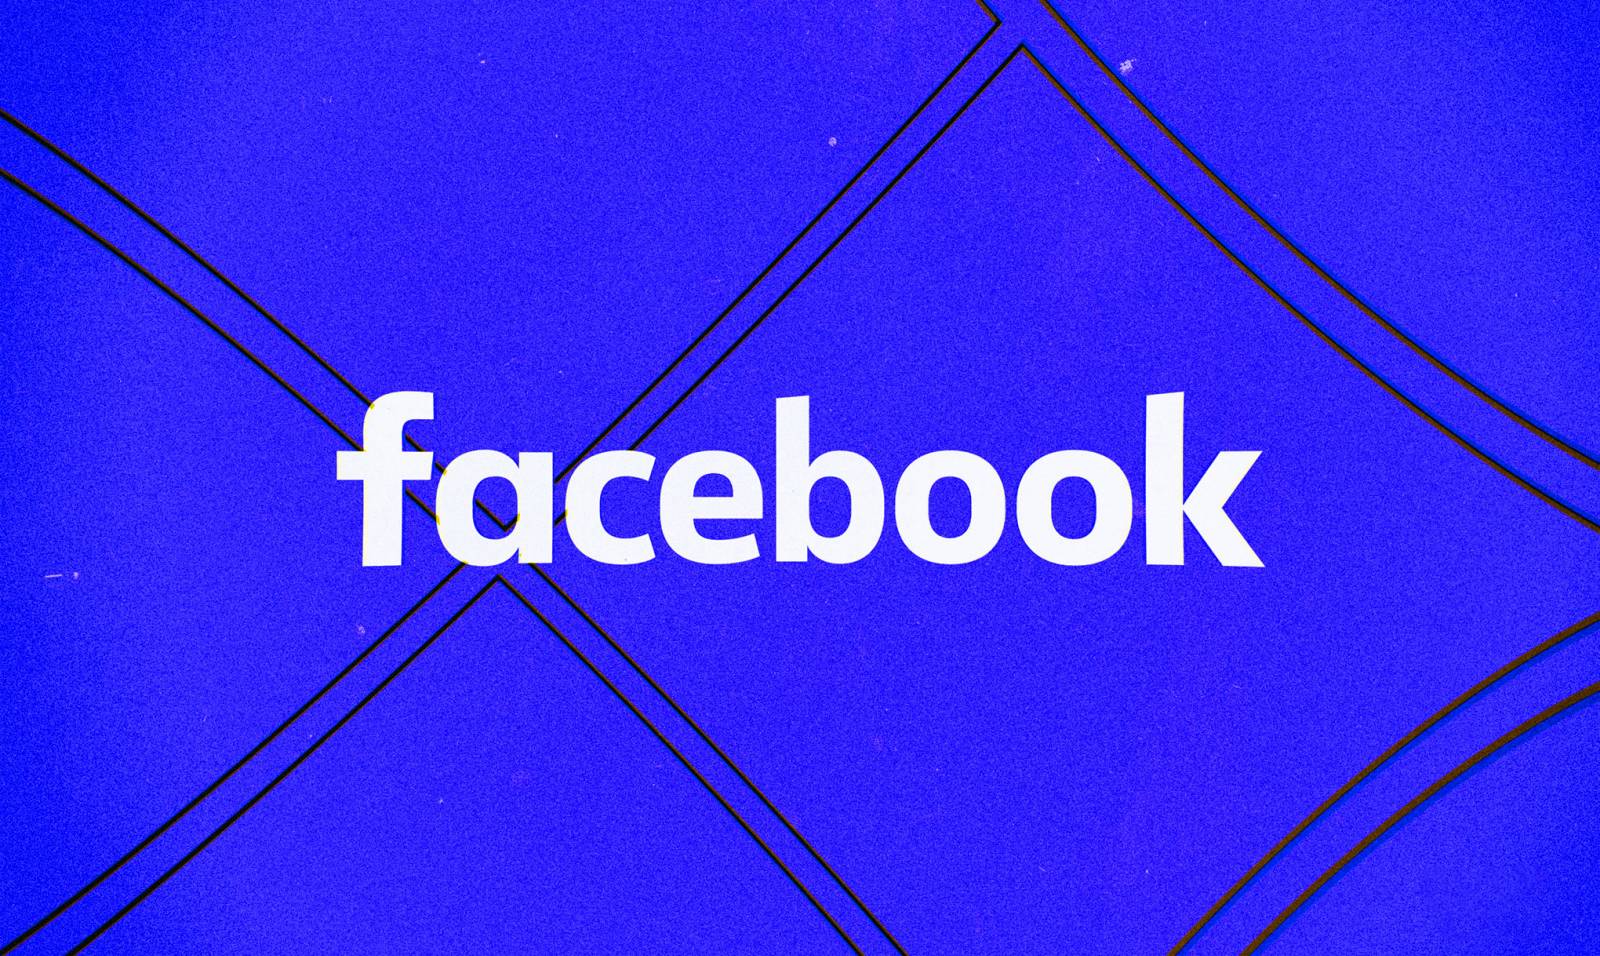 Facebook Update Lansat pentru Utilizatorii din Lumea